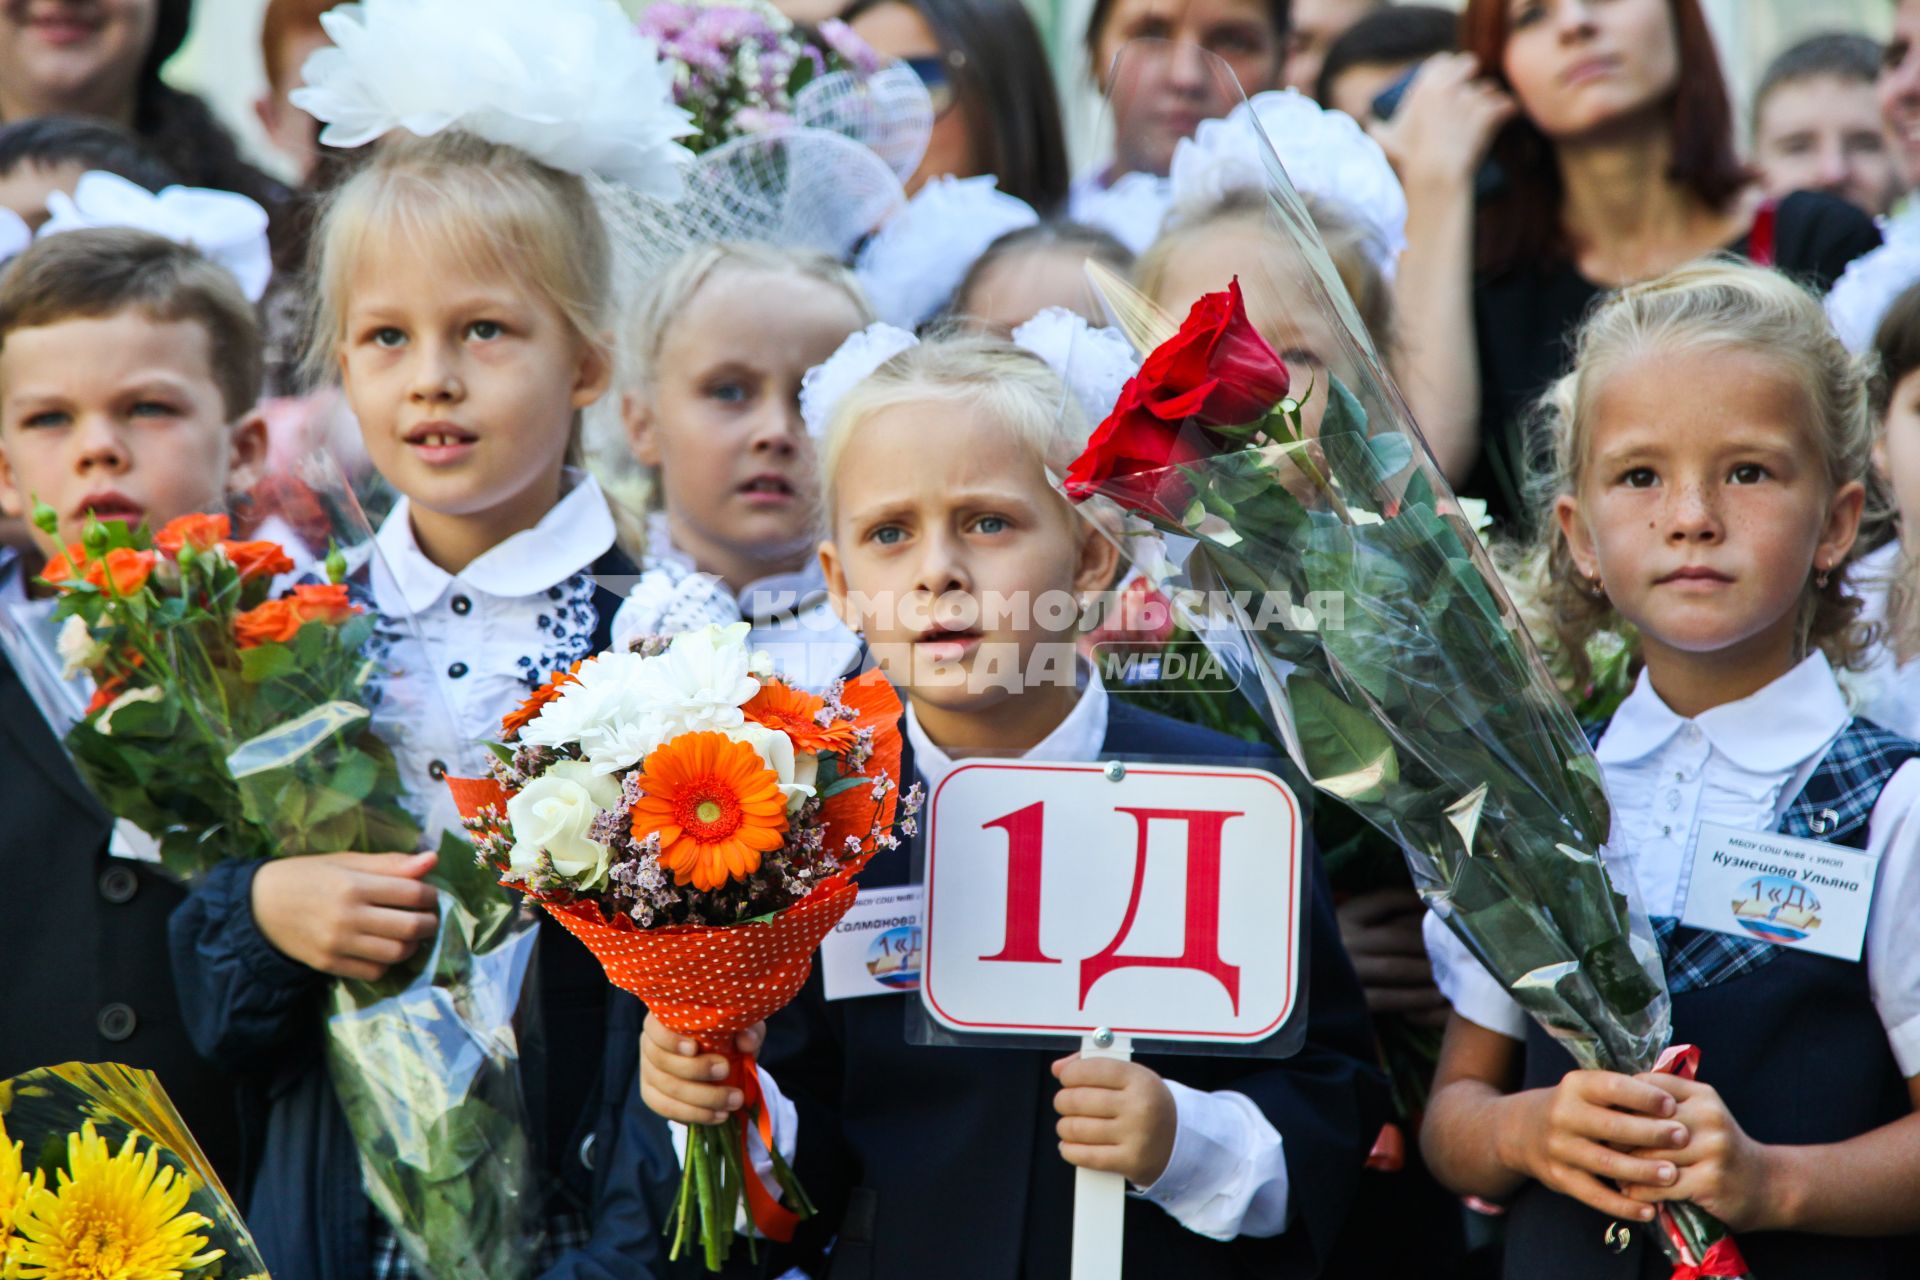 Удивленные дети на линейке школы 88 в Воронеже